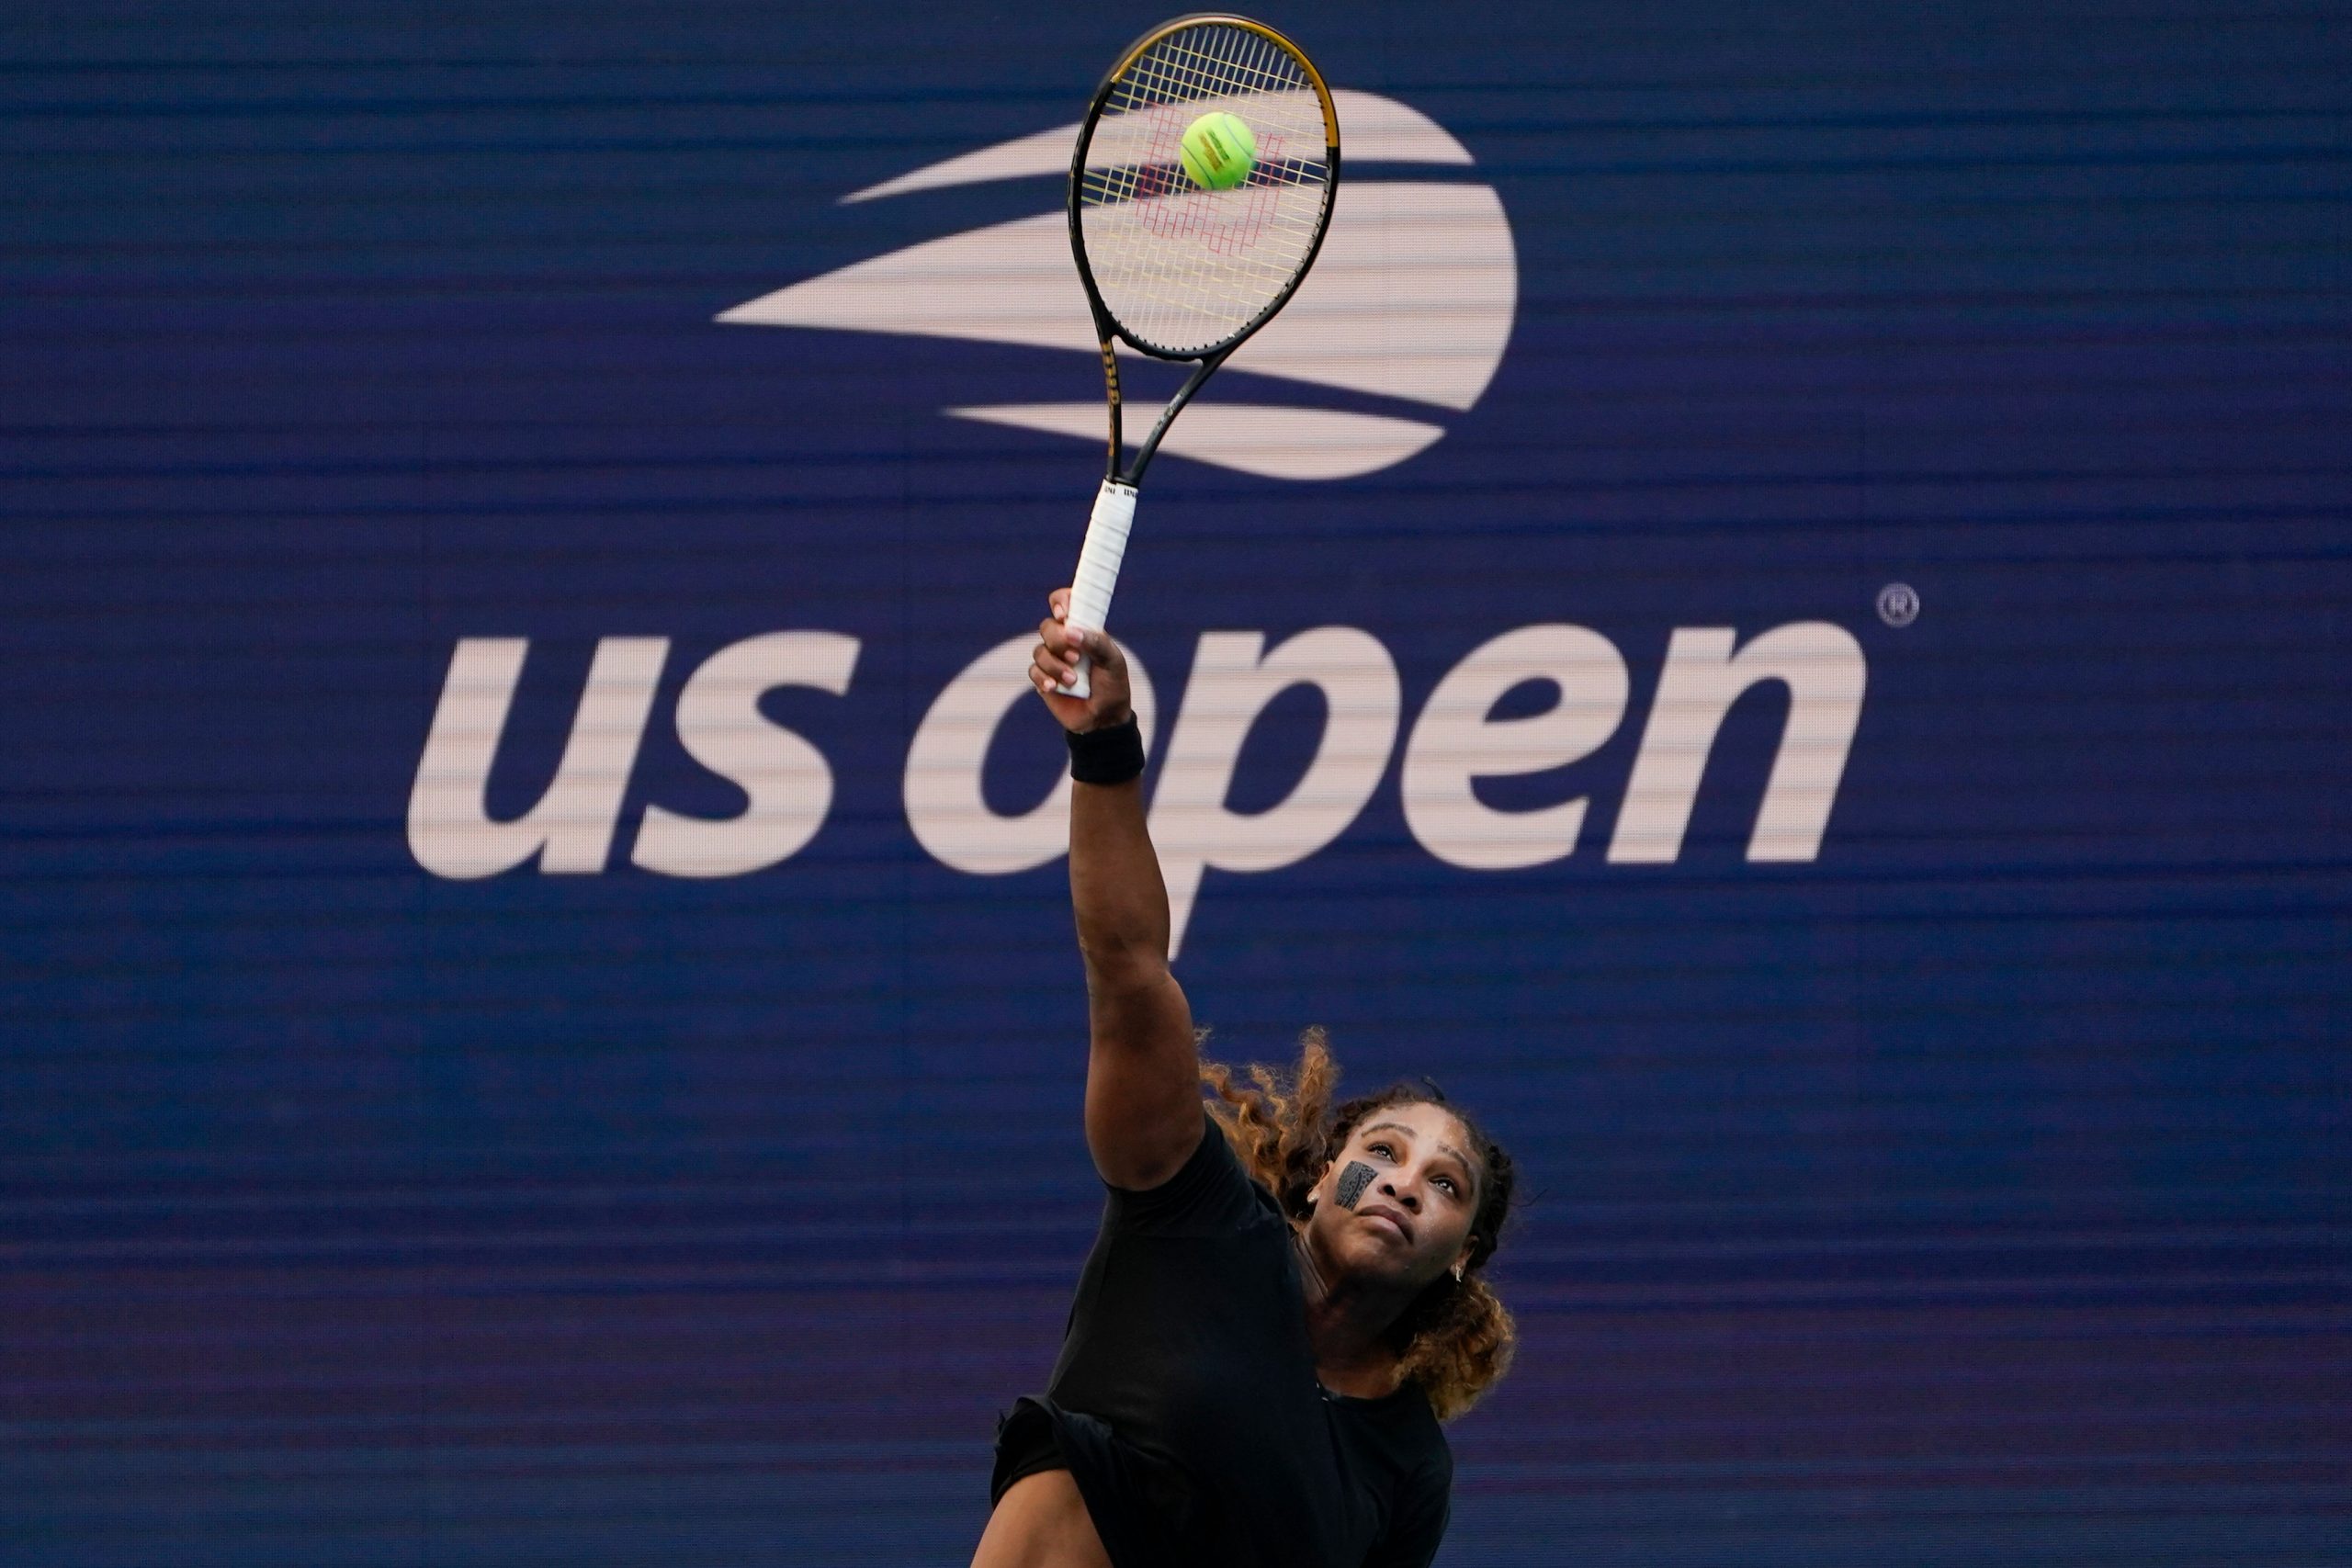 Watch: Oprah Winfrey pays tribute to Tennis star Serena Williams